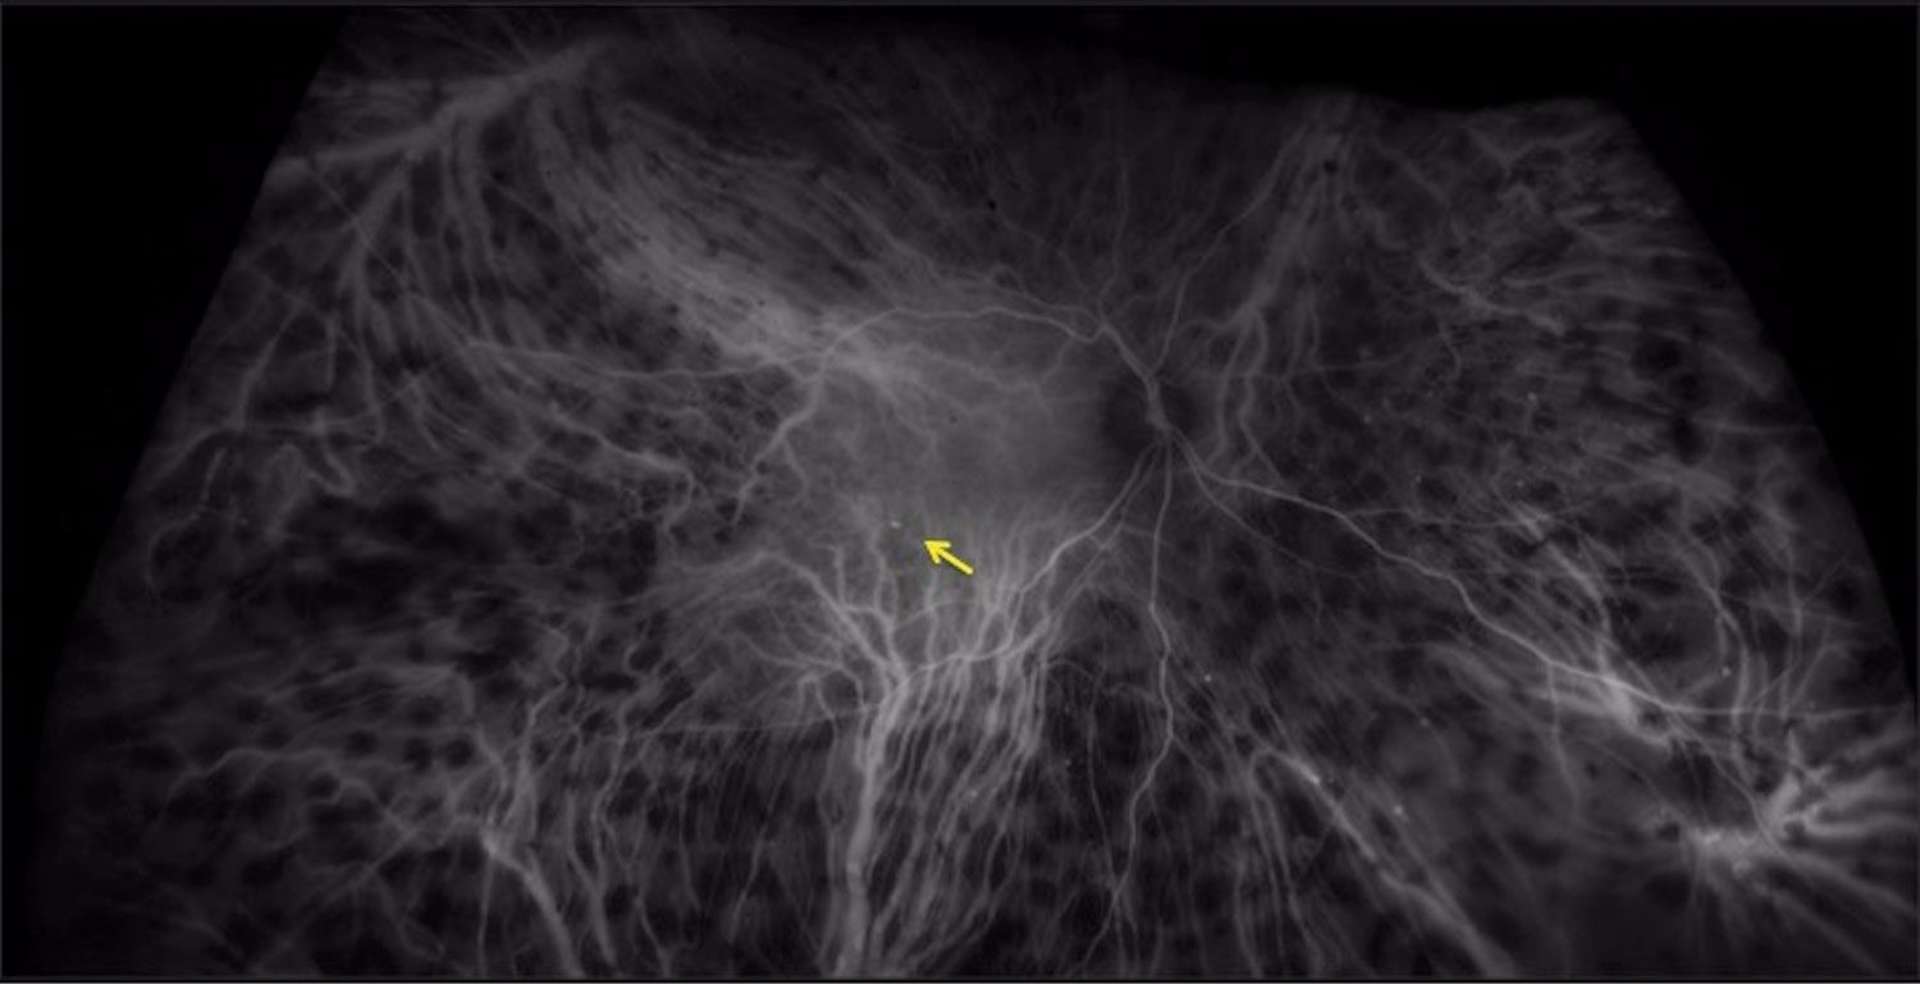 Figure 3. Angiographie au vert d’indocyanine (ICG) : bilan de résistance d’un OMD à un traitement bien conduit par IVT d’anti-VEGF. L’ICG confirme la présence d’un macroanévrysme capillaire qui entretient l’OMD (flèche jaune). De nombreux macroanévrysmes capillaires périphériques sont également visibles, sans conséquence sur la vision, ainsi que de multiples zones hypofluorescentes périphériques correspondant aux impacts d’une panphotocoagulation rétinienne.
